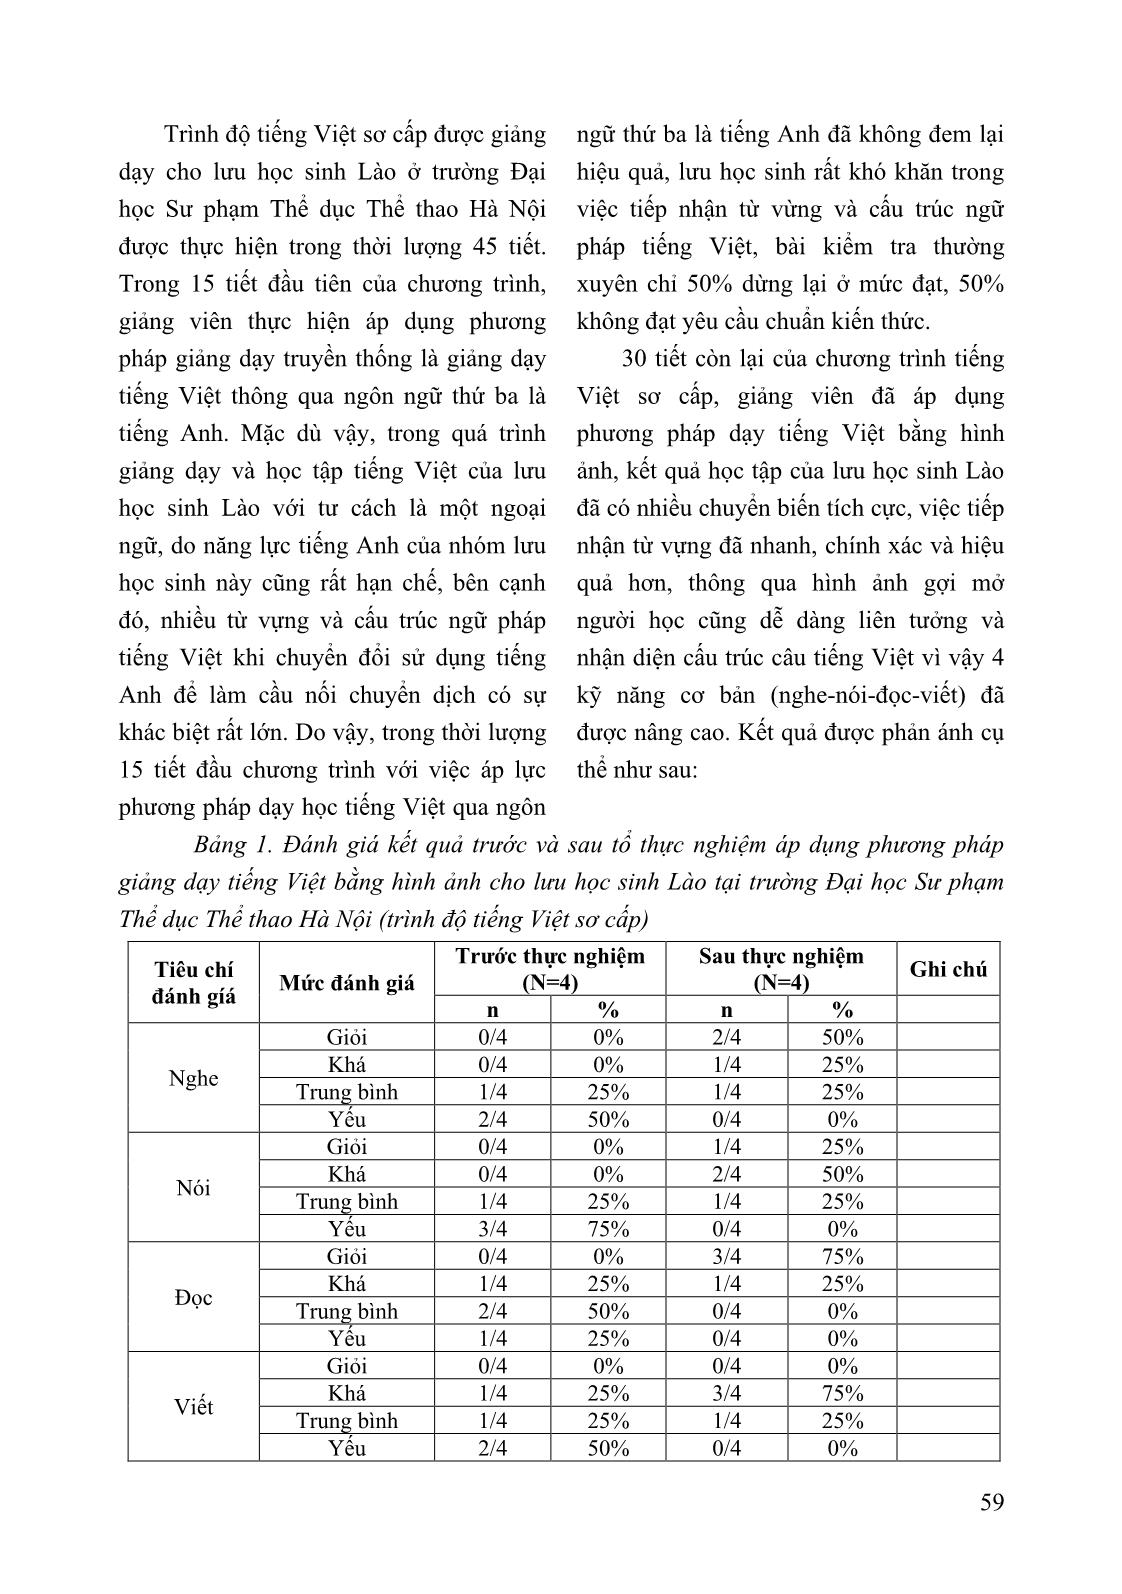 Áp dụng phương pháp dạy tiếng Việt bằng hình ảnh cho Lưu học sinh Lào tại trường Đại học Sư phạm Thể dục Thể thao Hà Nội (tiếng Việt trình độ cơ sở) trang 5